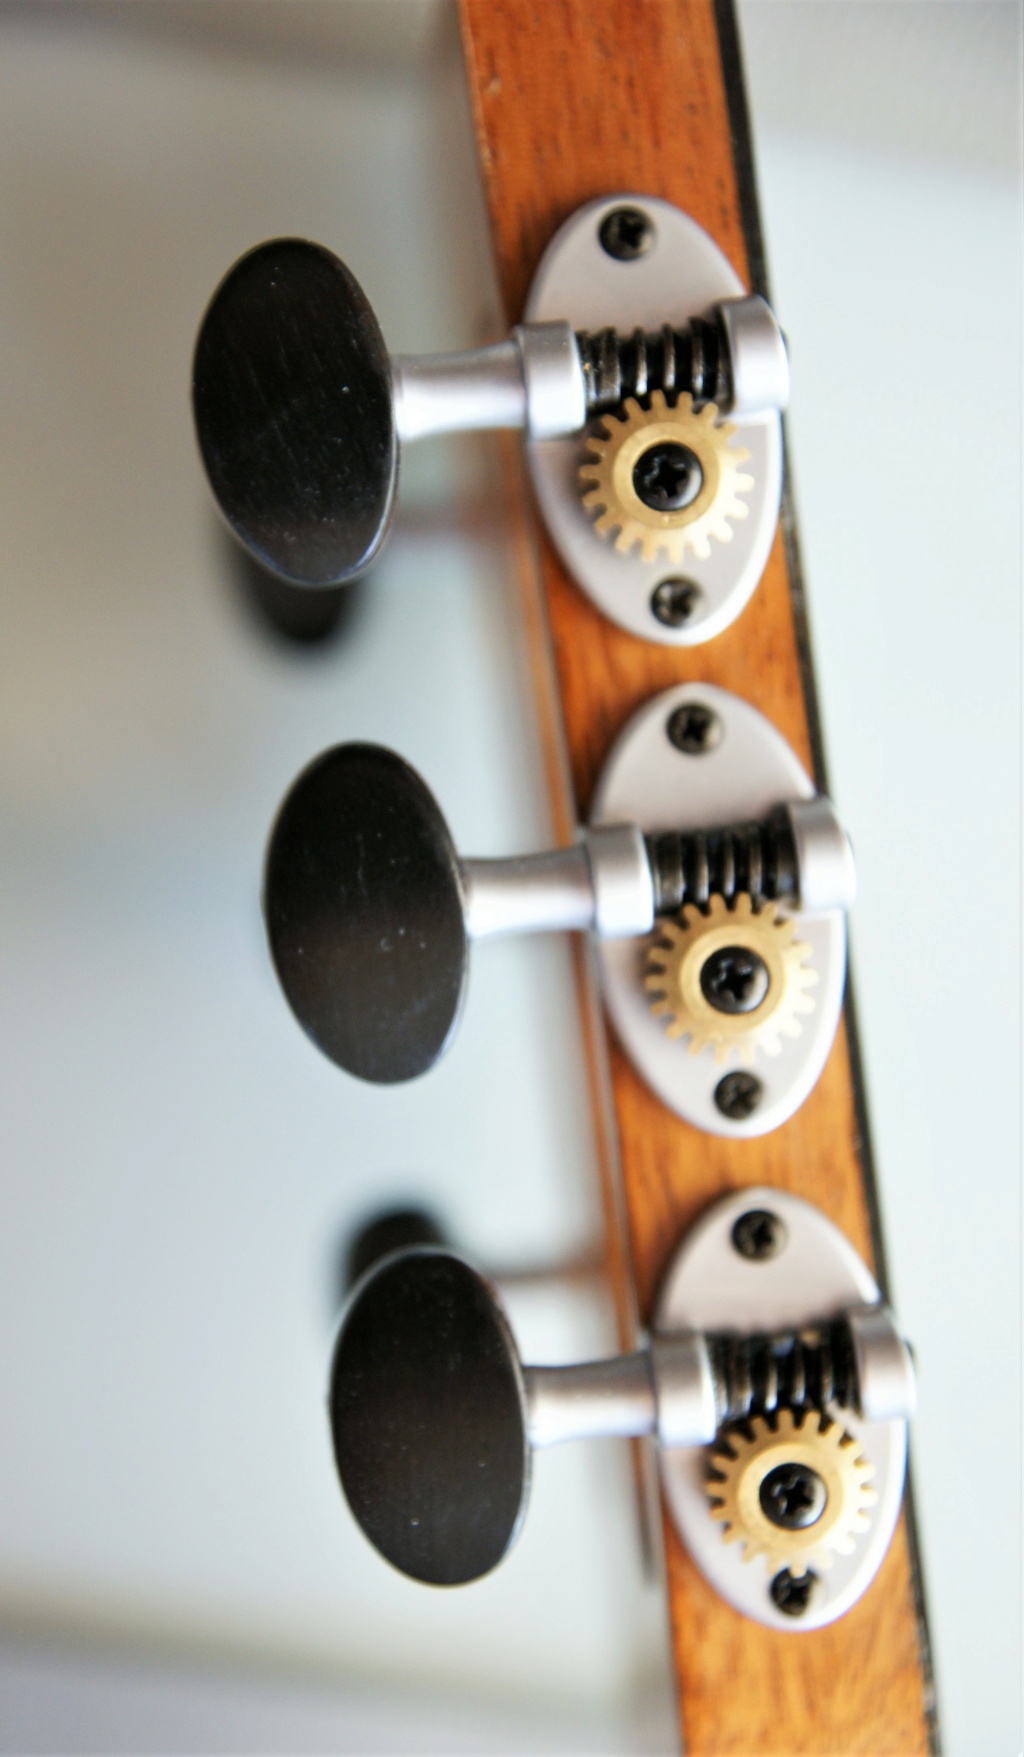 La Réselle guitares : un luthier suisse prometteur ! - Page 3 Schert12